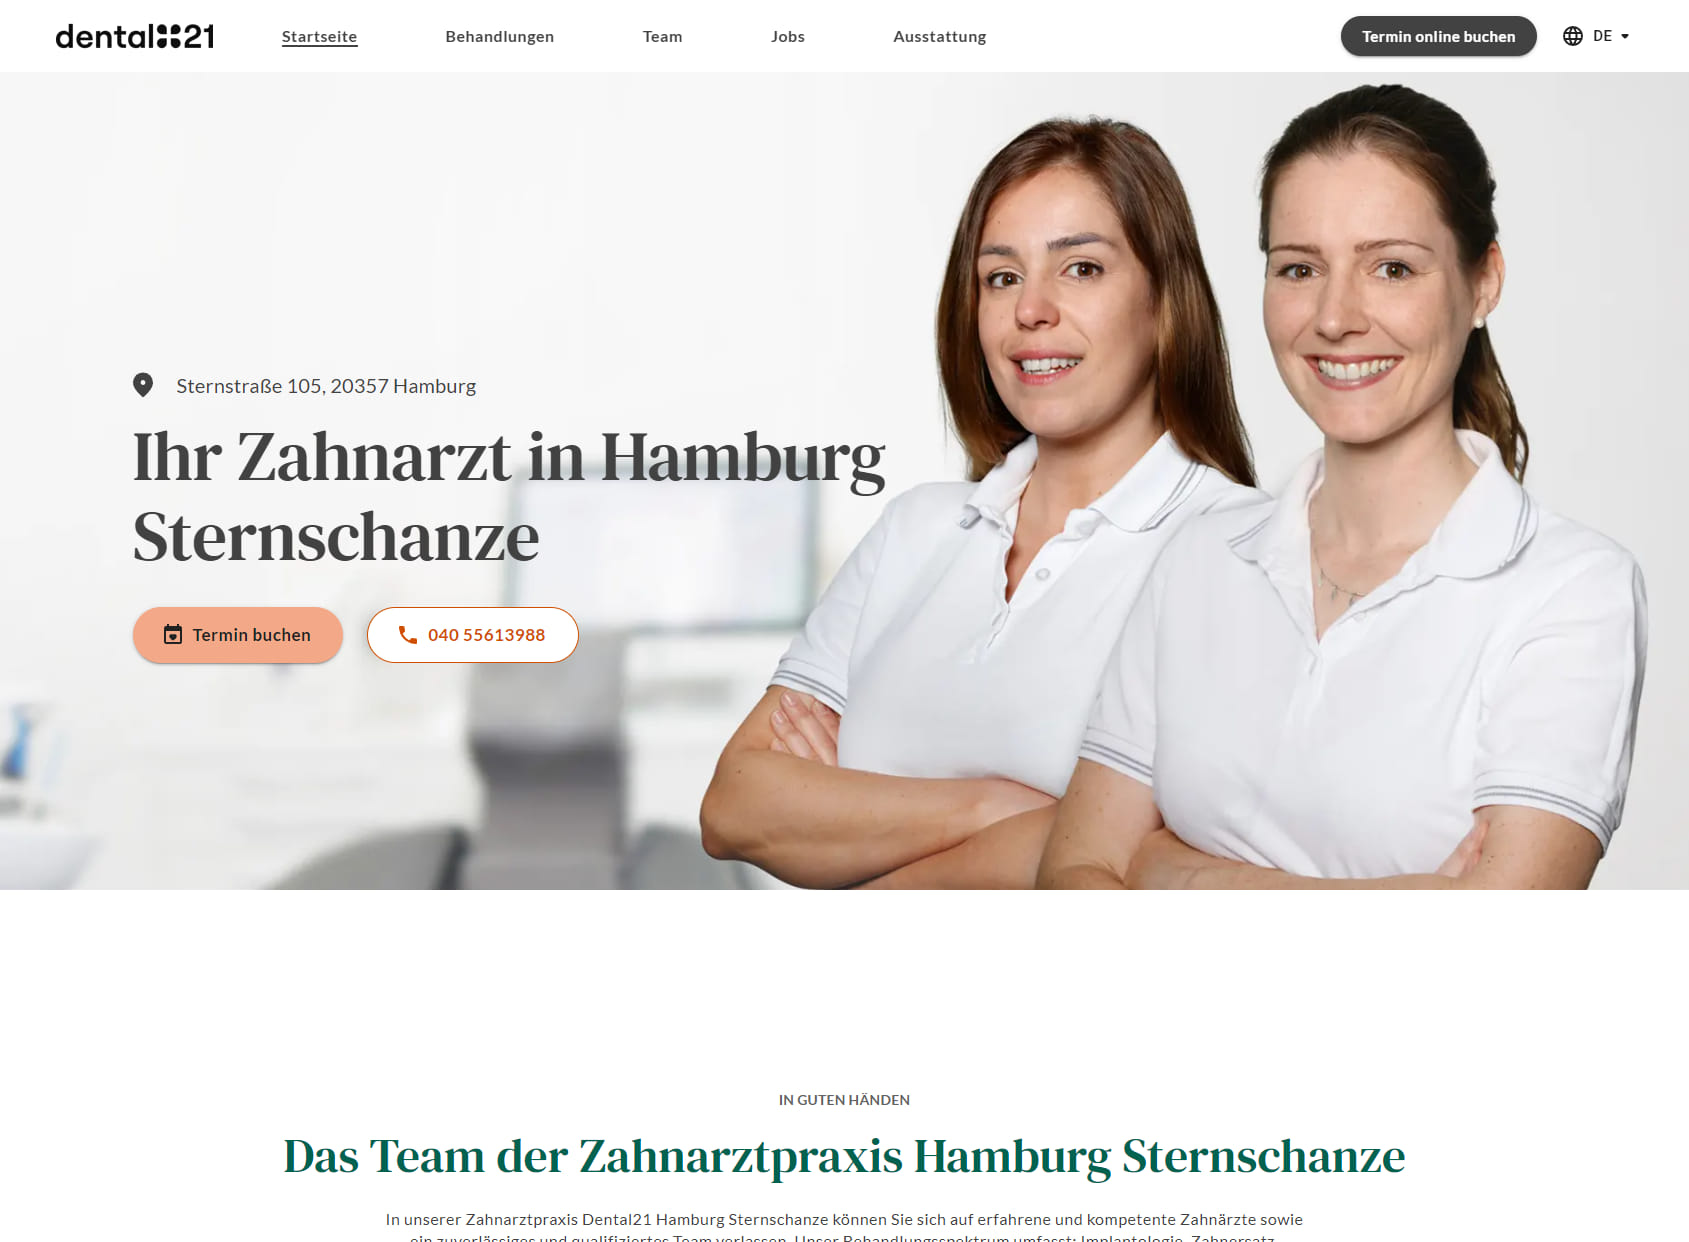 Dental21 Hamburg Sternschanze